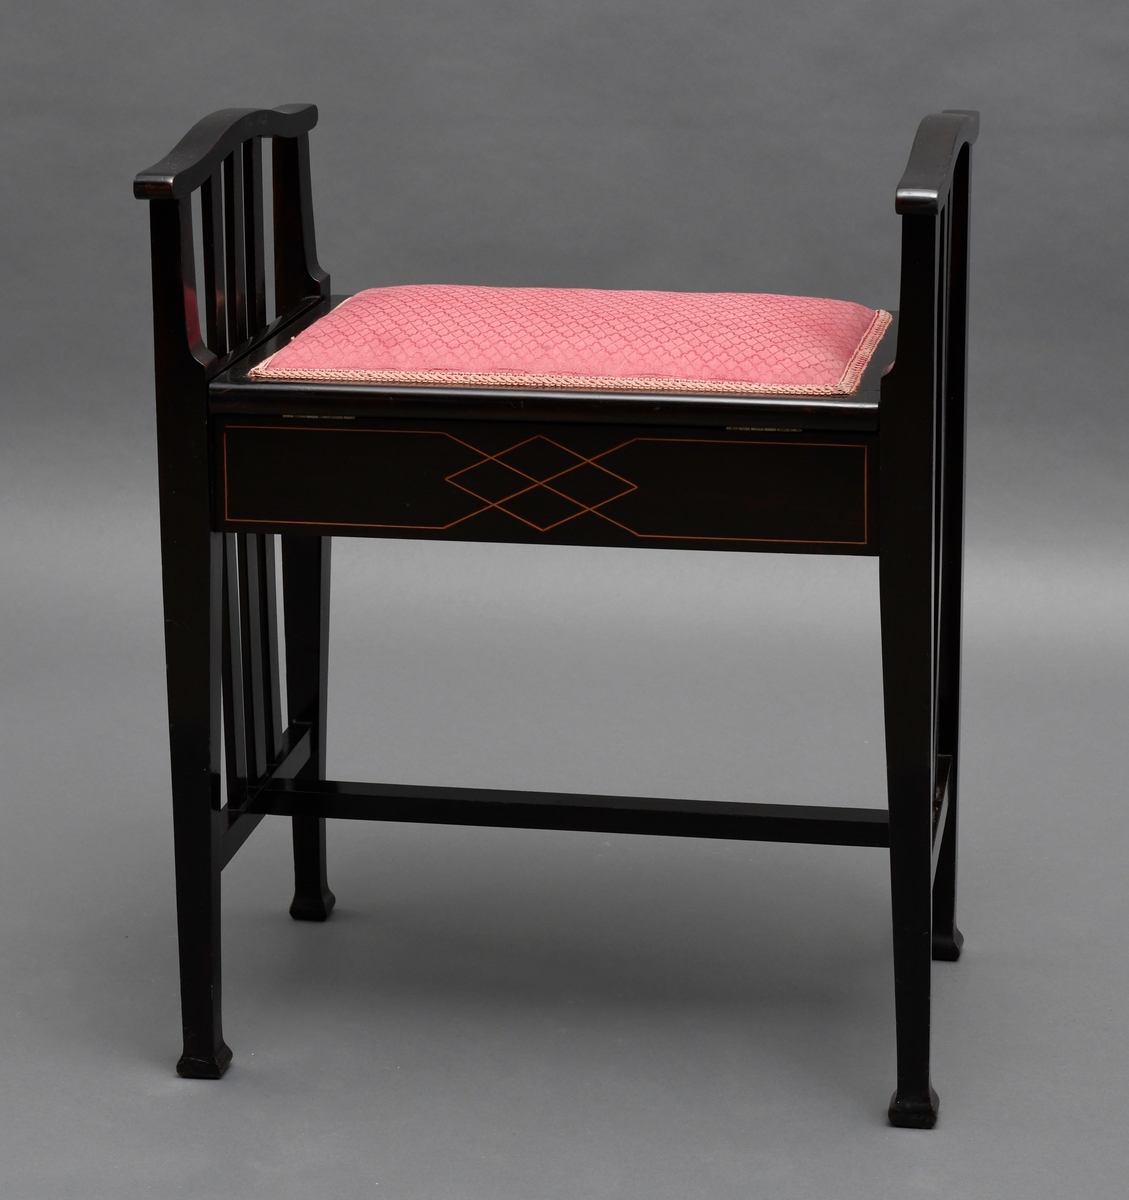 Pianokrakk, av tre, svart lakkert med intarsia. Et rom under setet, setet er hengslet og har tekstiltrekk.